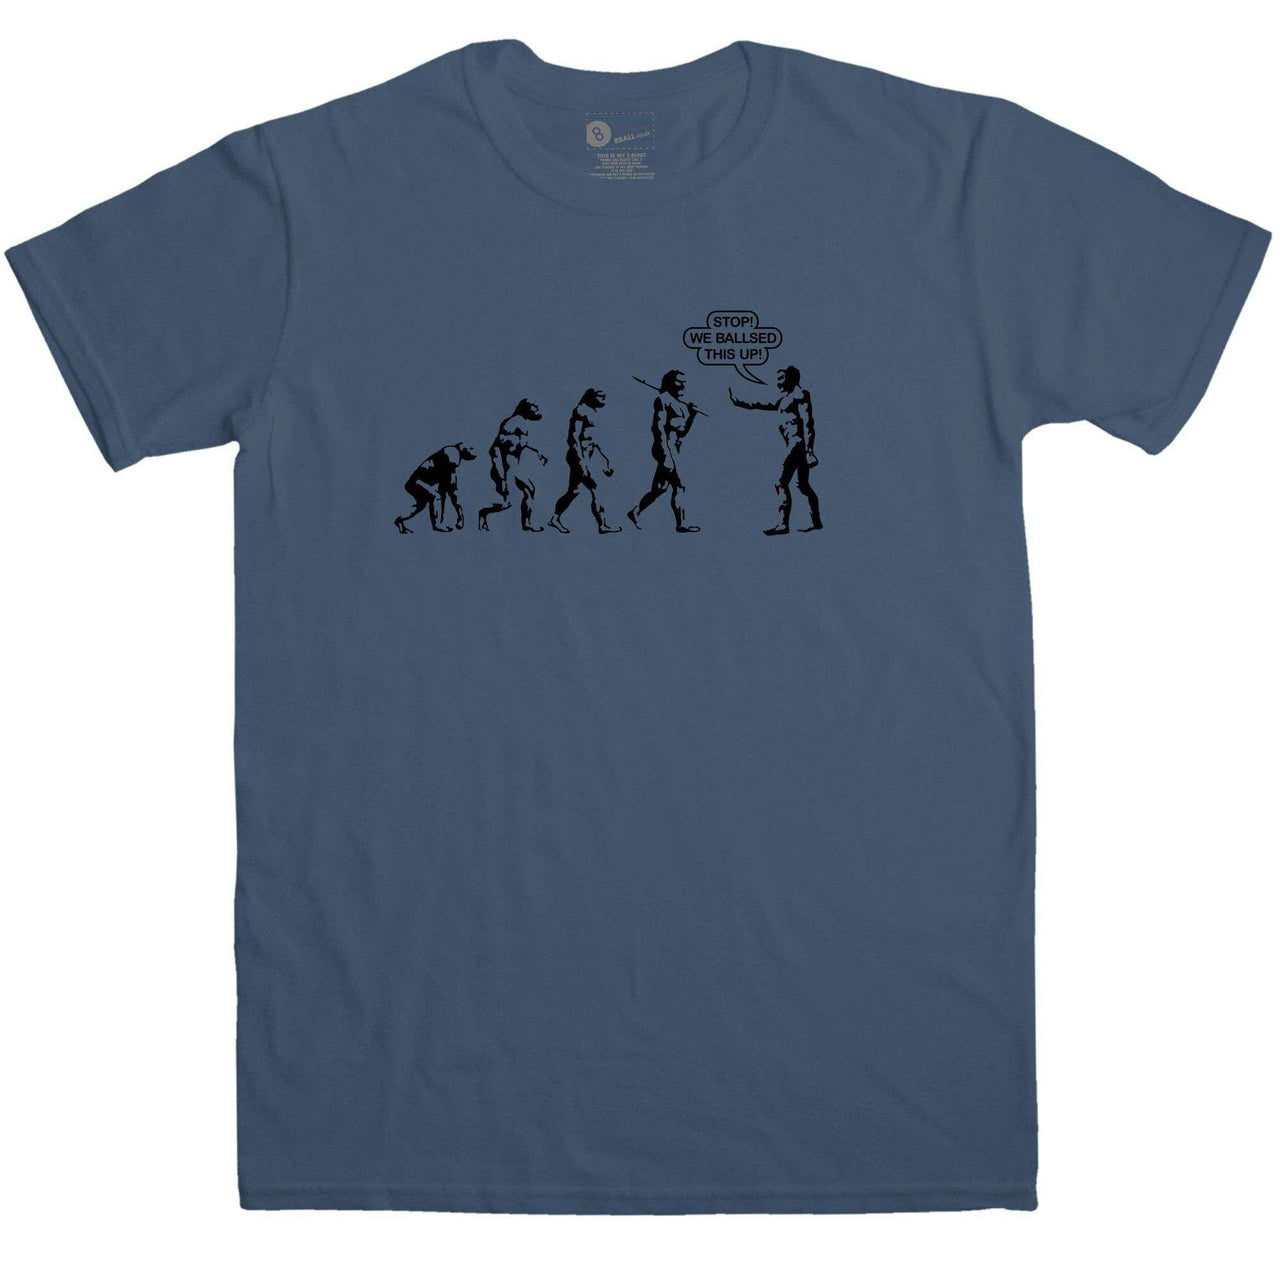 Evolution We Ballsed Up Unisex T-Shirt 8Ball